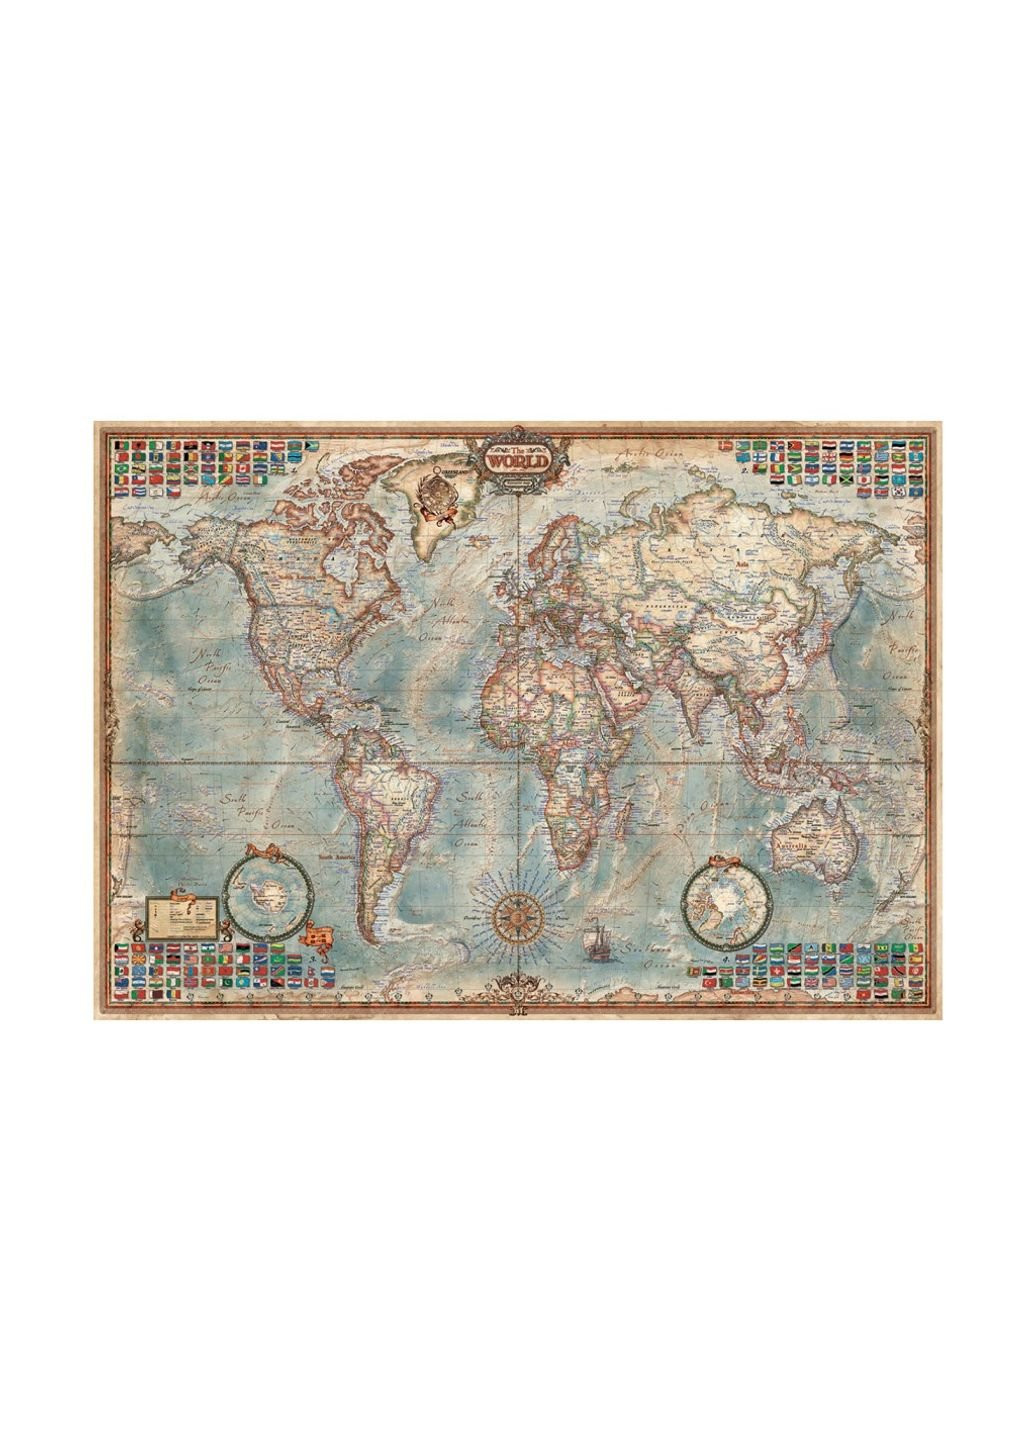 Пазл Політична карта світу 1500 елементів (6425212) Educa (254065997)